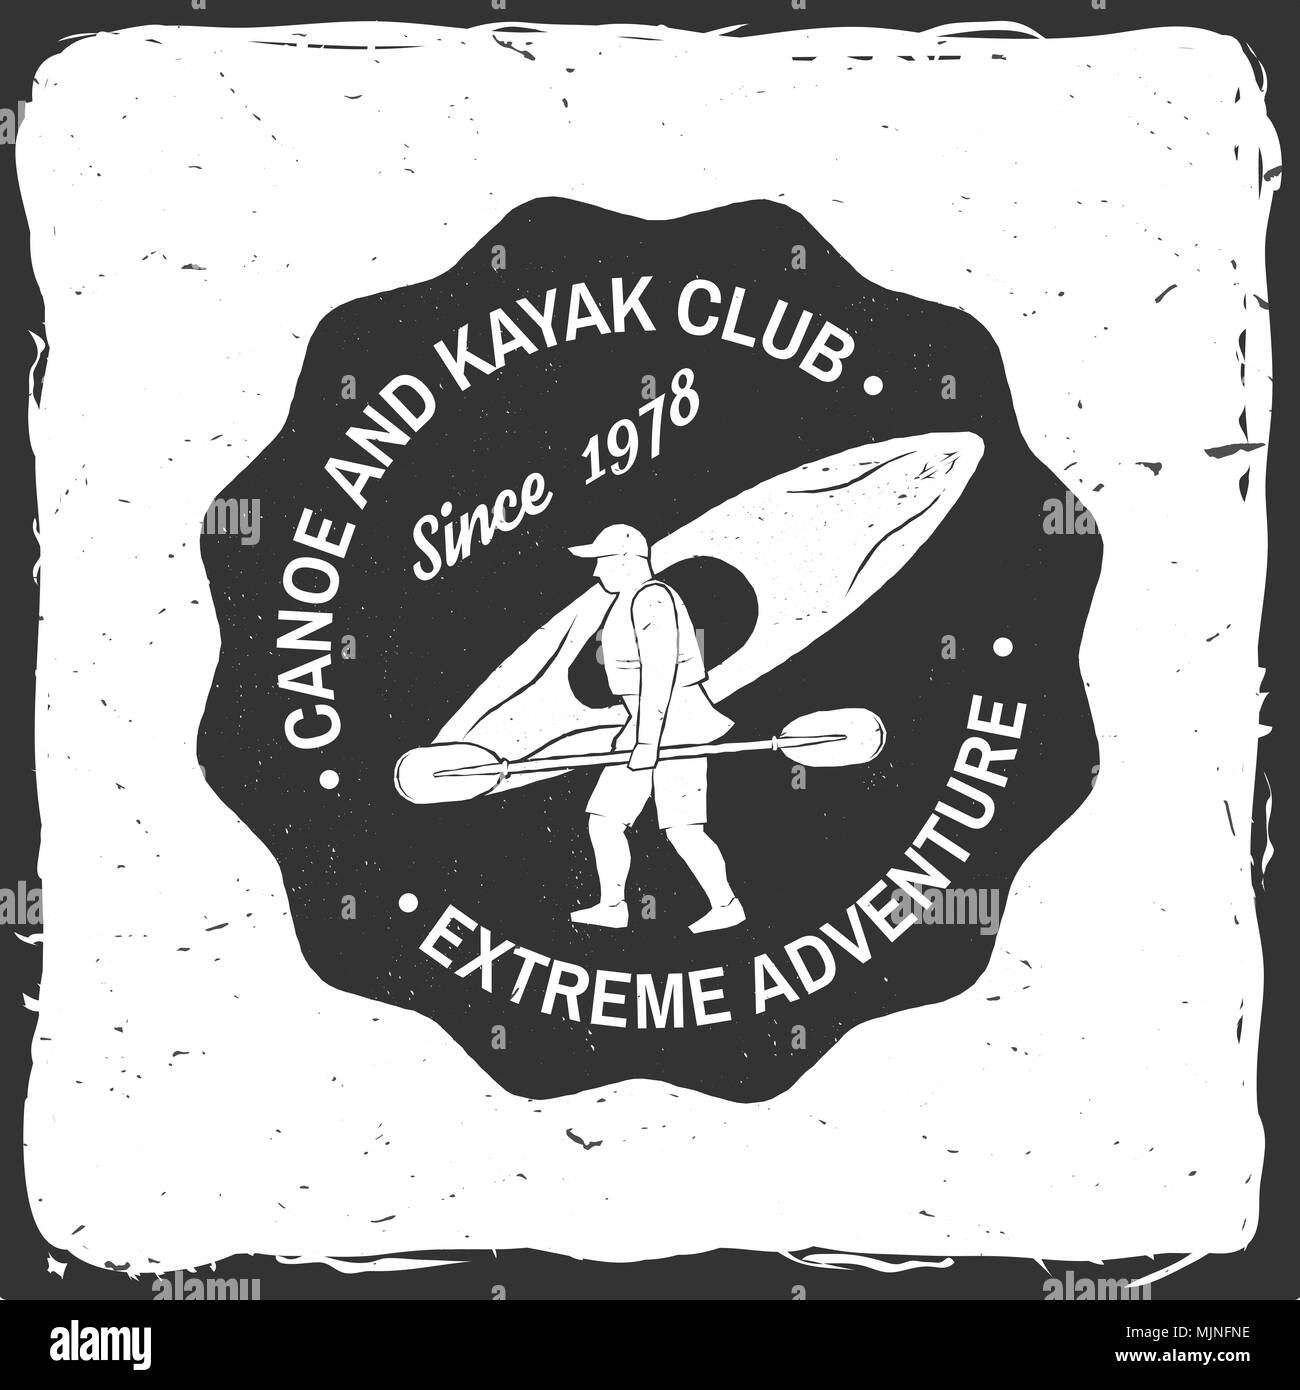 Canoa e Kayak club badge. Illustrazione Vettoriale. Concetto di t-shirt, stampare il timbro o il raccordo a t. Vintage design tipografia con silhouette di kayaker. Extreme wa Illustrazione Vettoriale